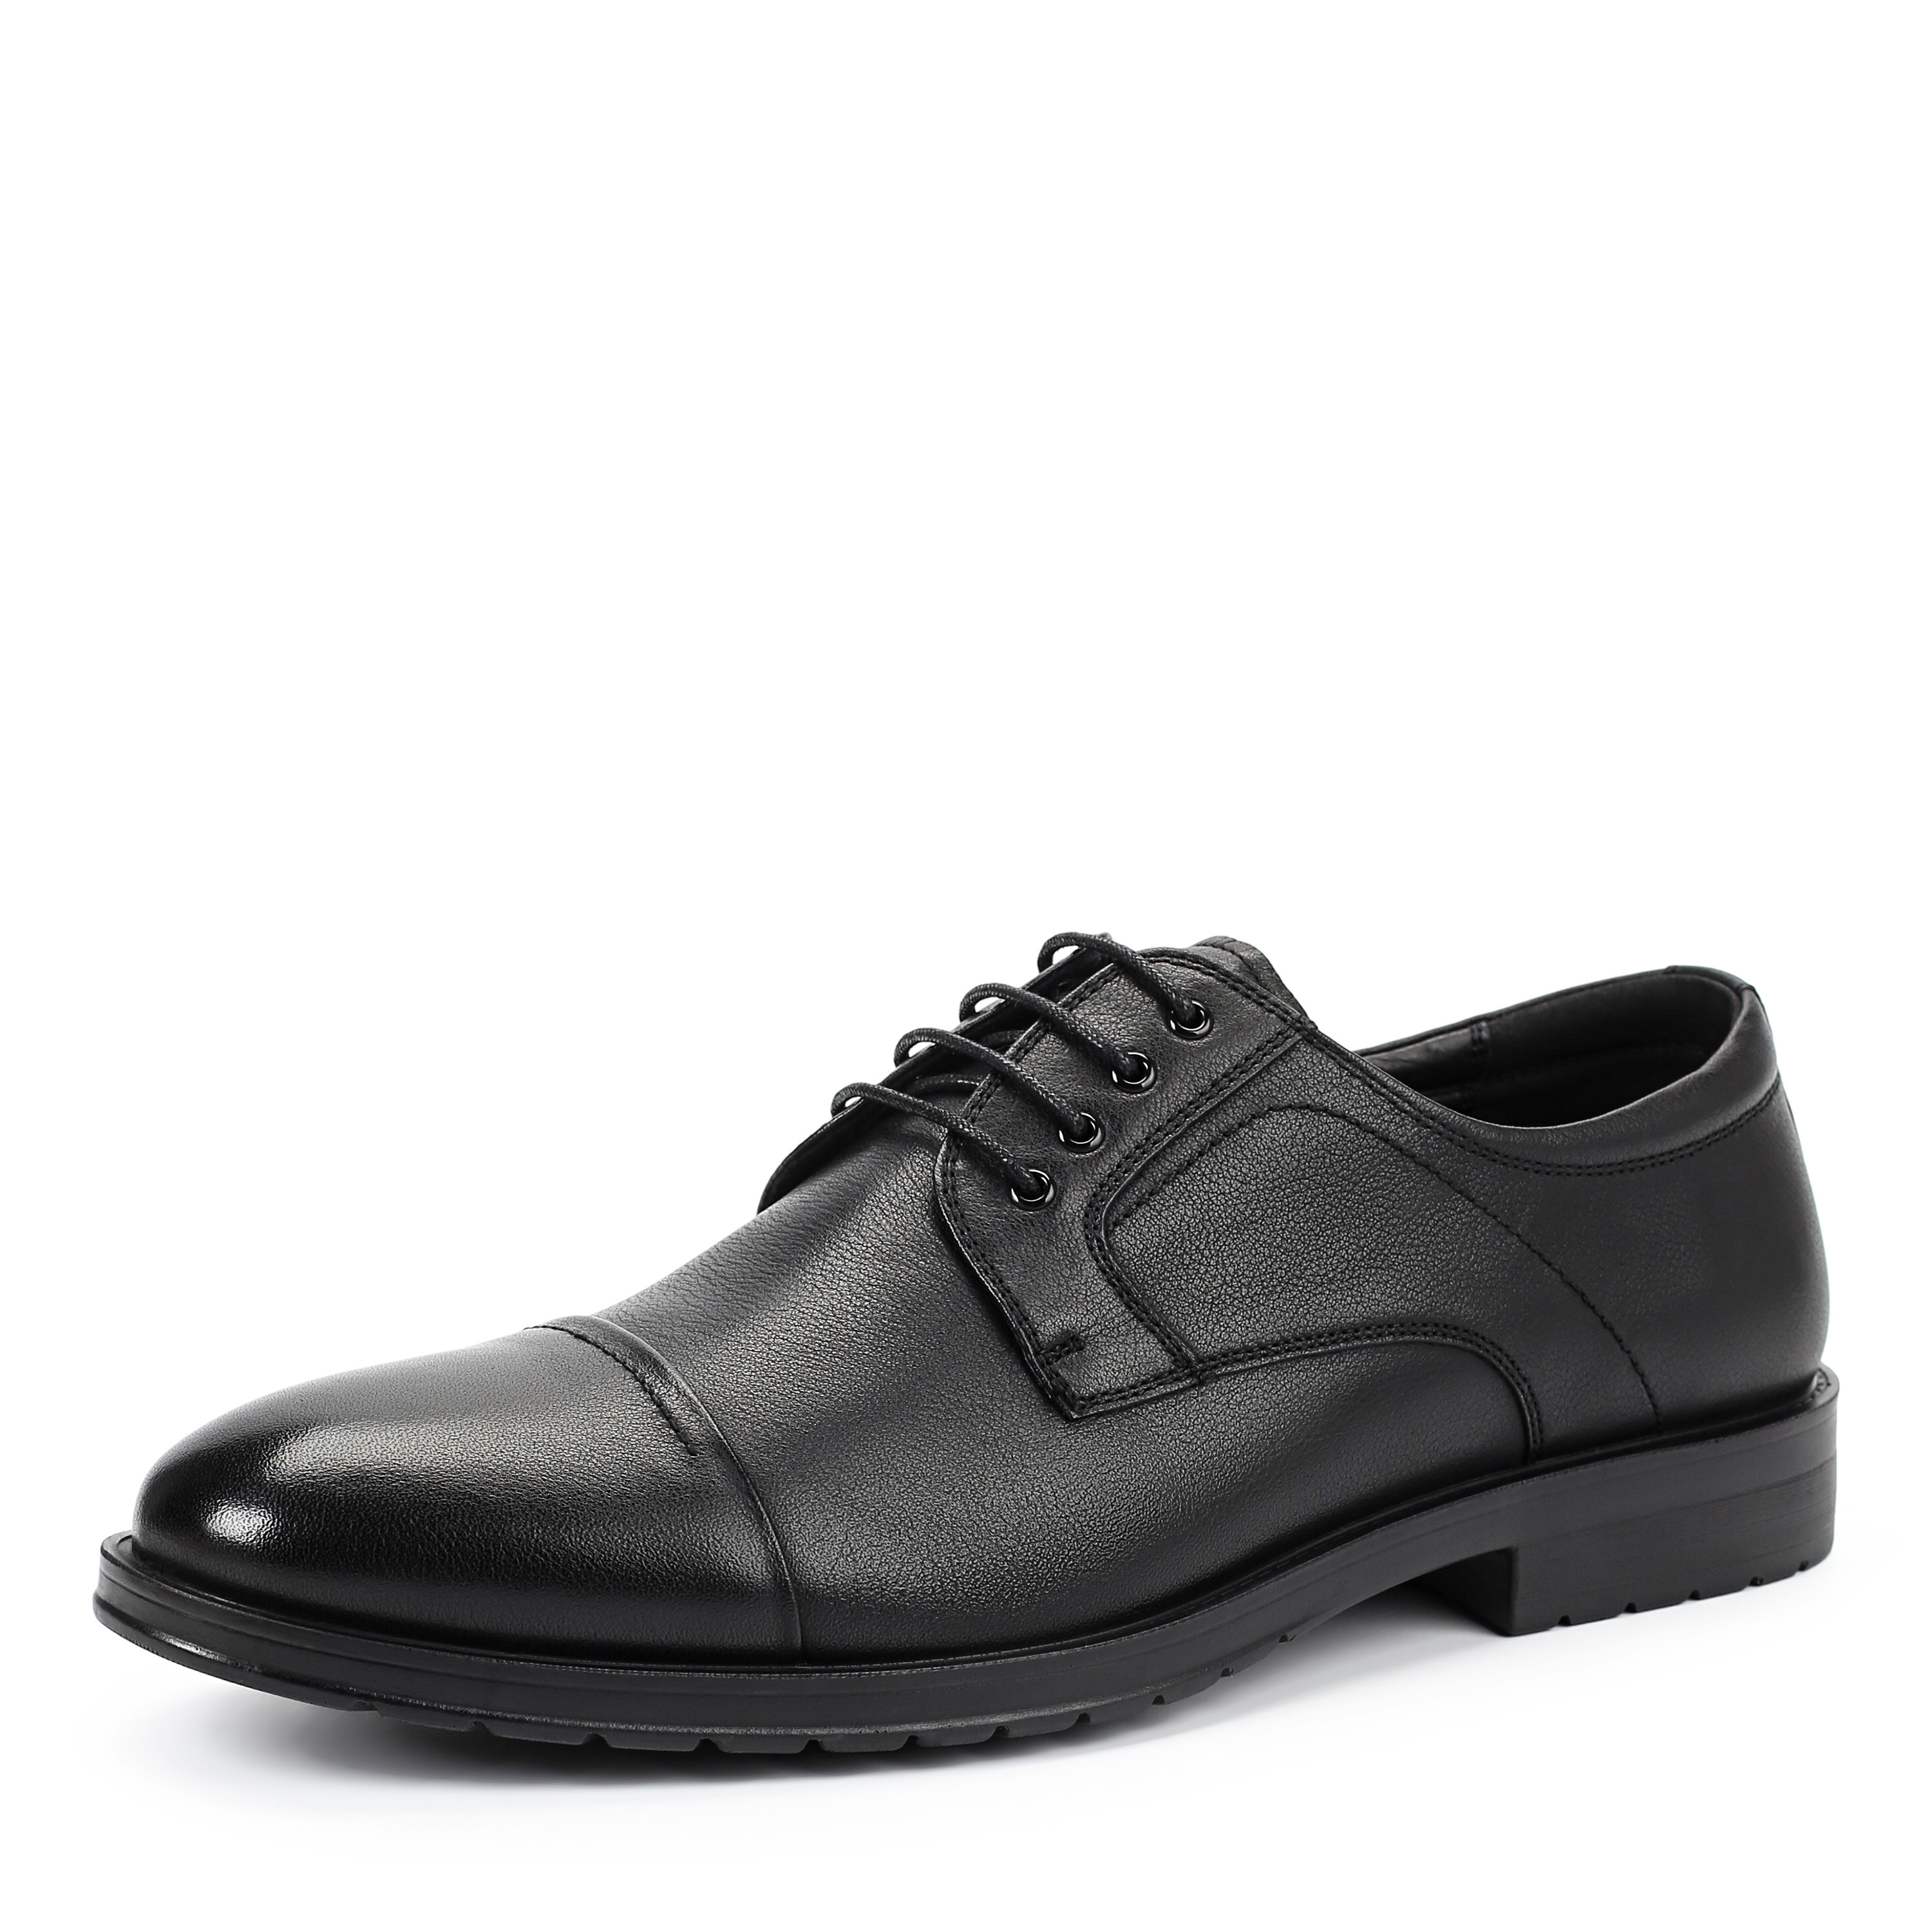 Туфли Thomas Munz 104-019E-1101, цвет черный, размер 41 дерби - фото 2